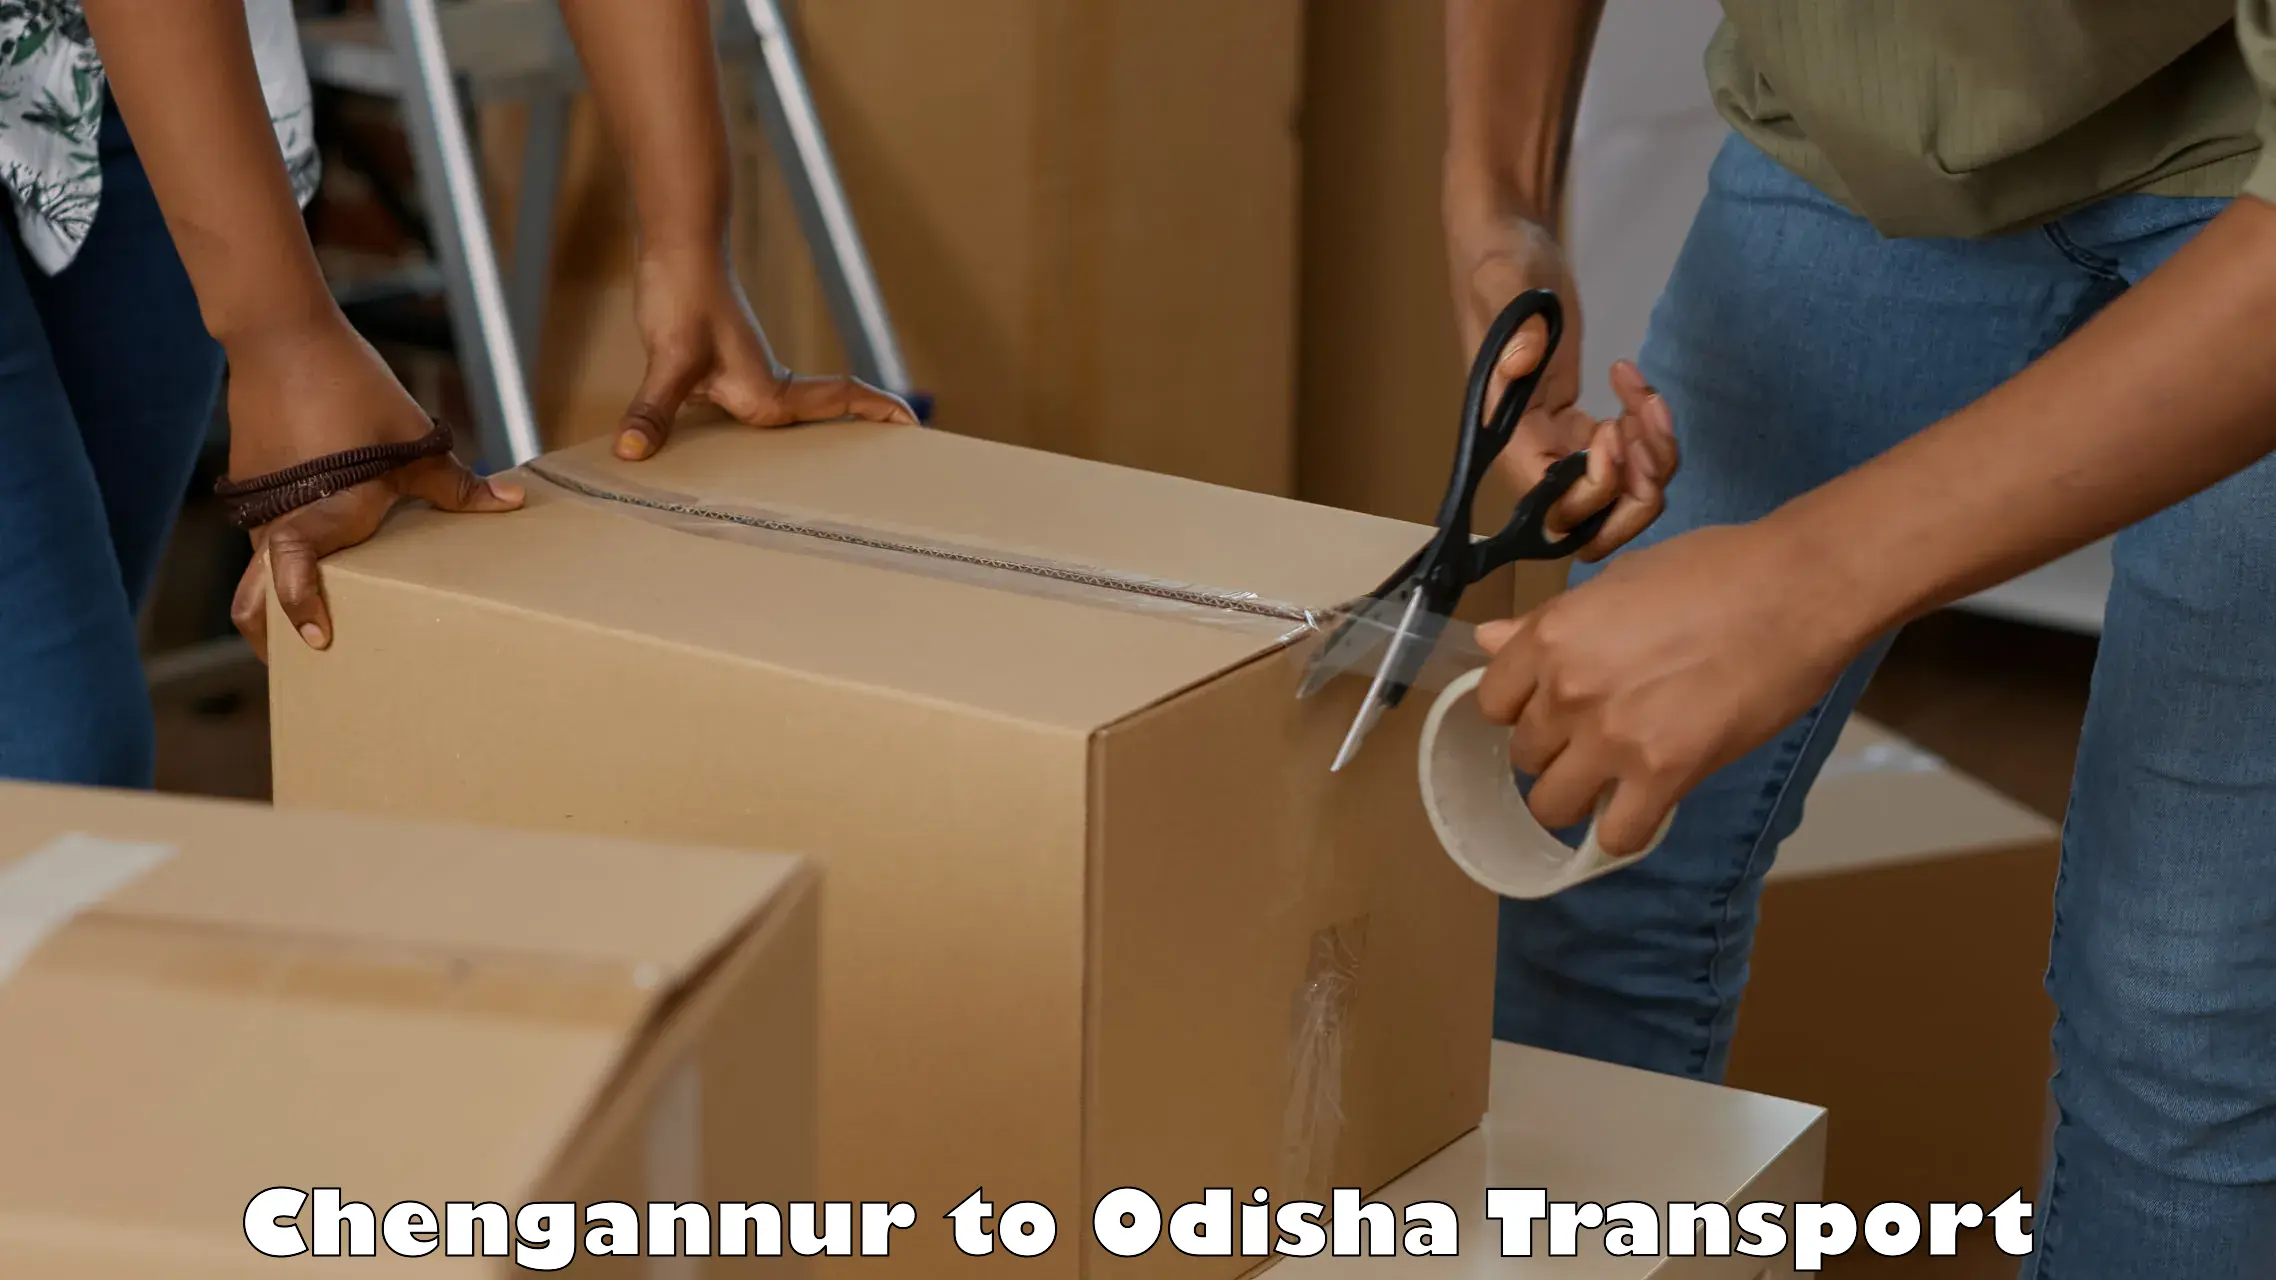 Online transport service Chengannur to Brajrajnagar